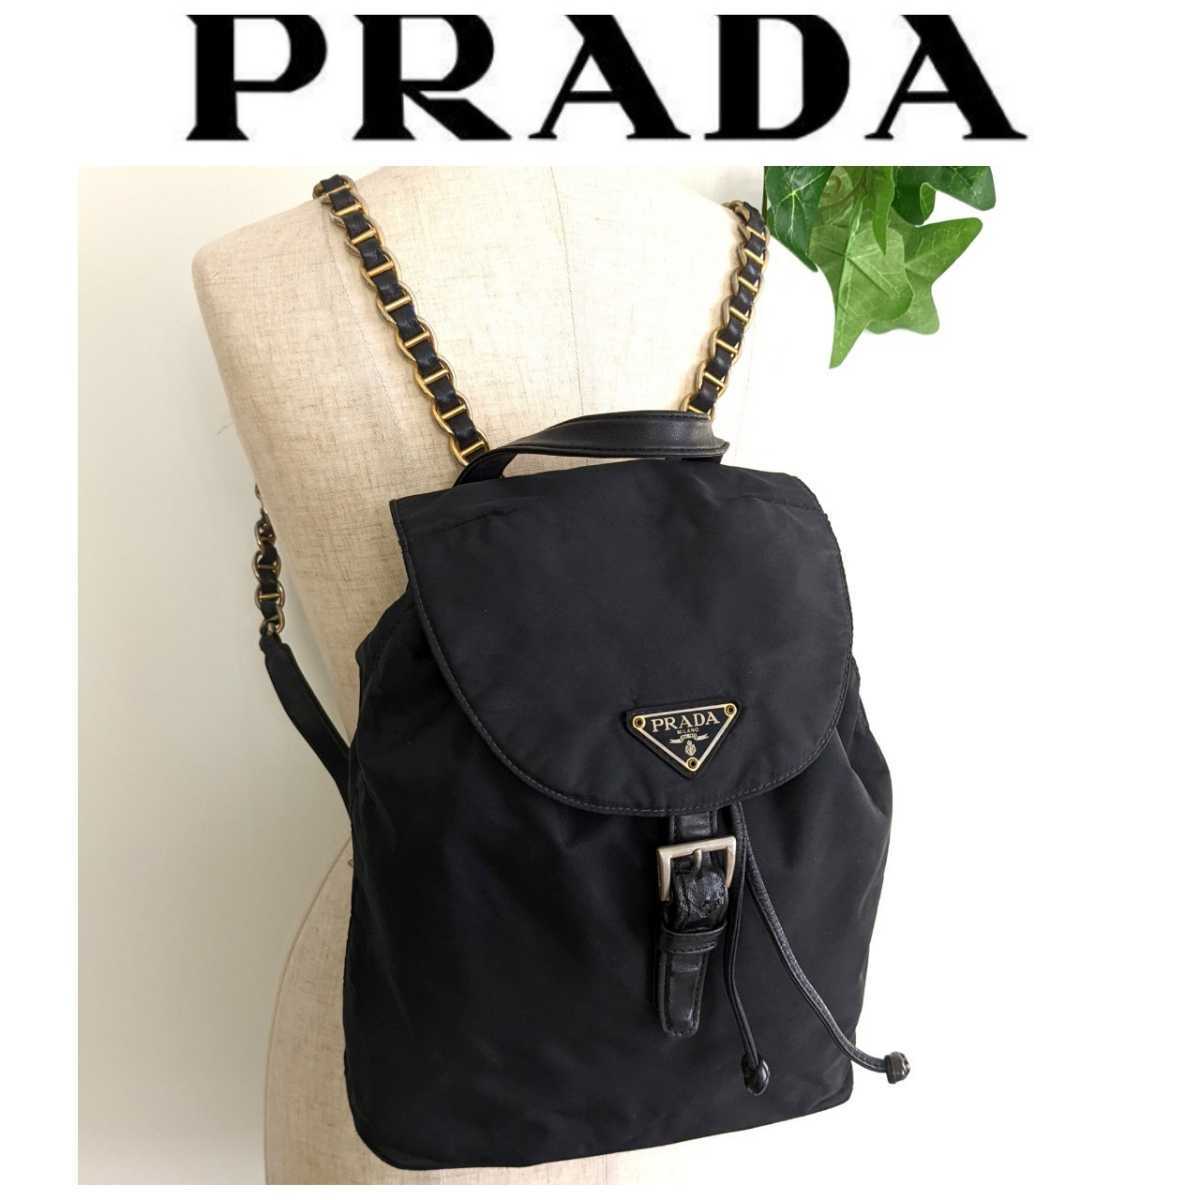 PRADA オールドプラダ ビンテージ チェーン ナイロン レザー リュック 巾着 バッグ バックパック 黒 ブラック ゴールド レディース メンズ